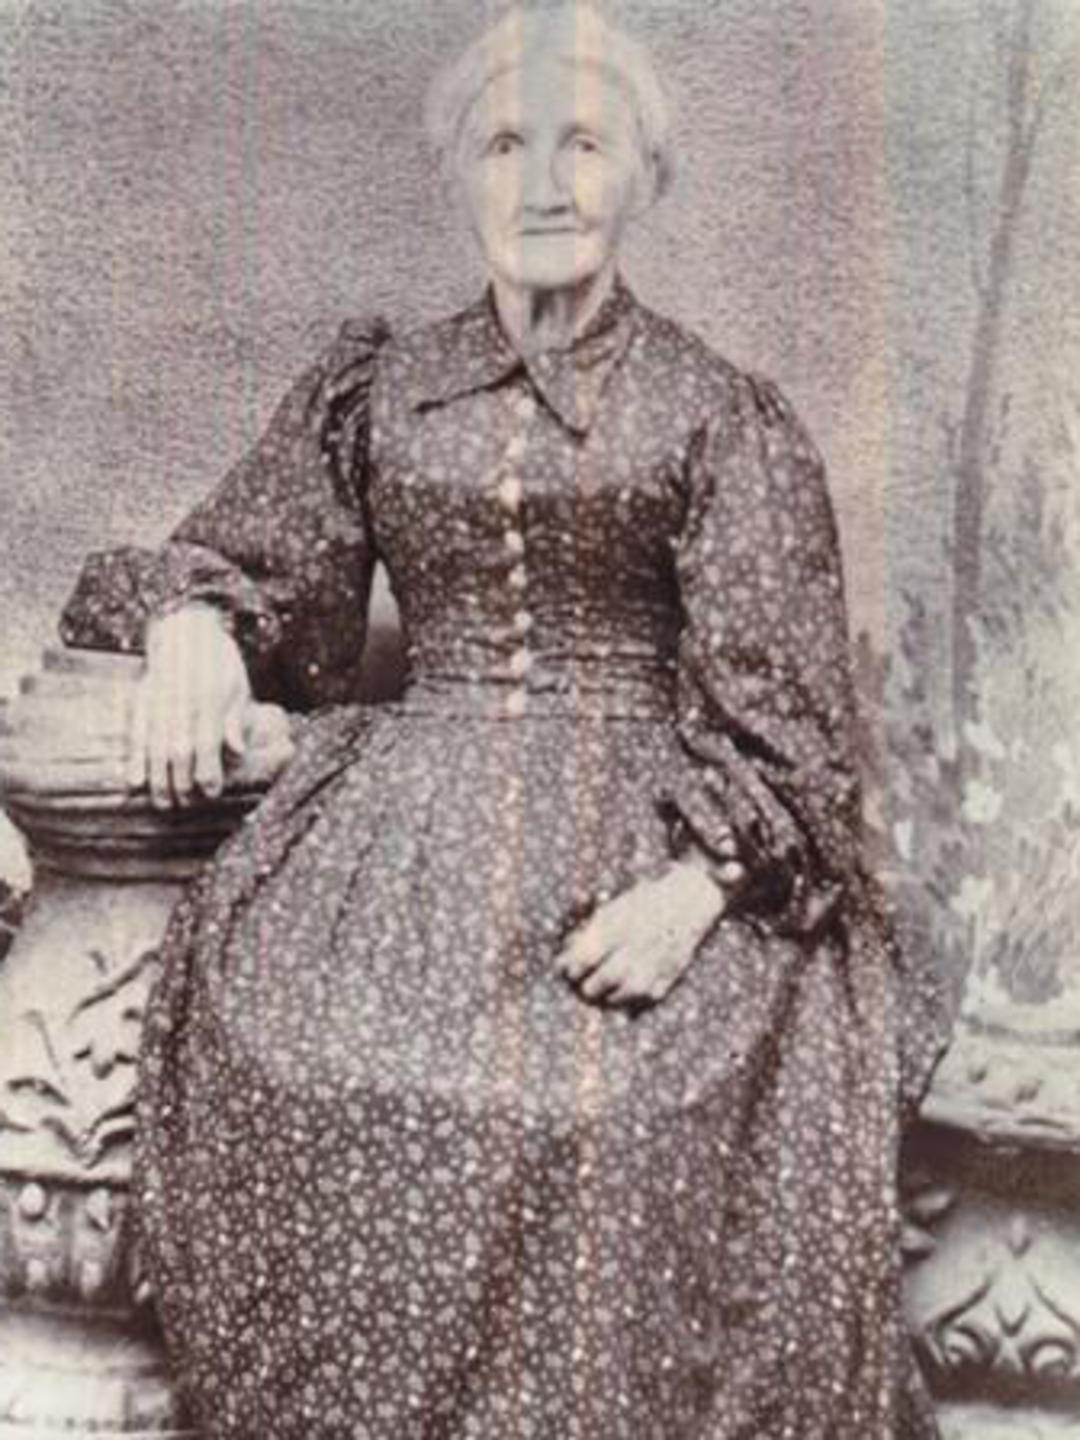 Angeline Hodgkins (1821 - 1902)